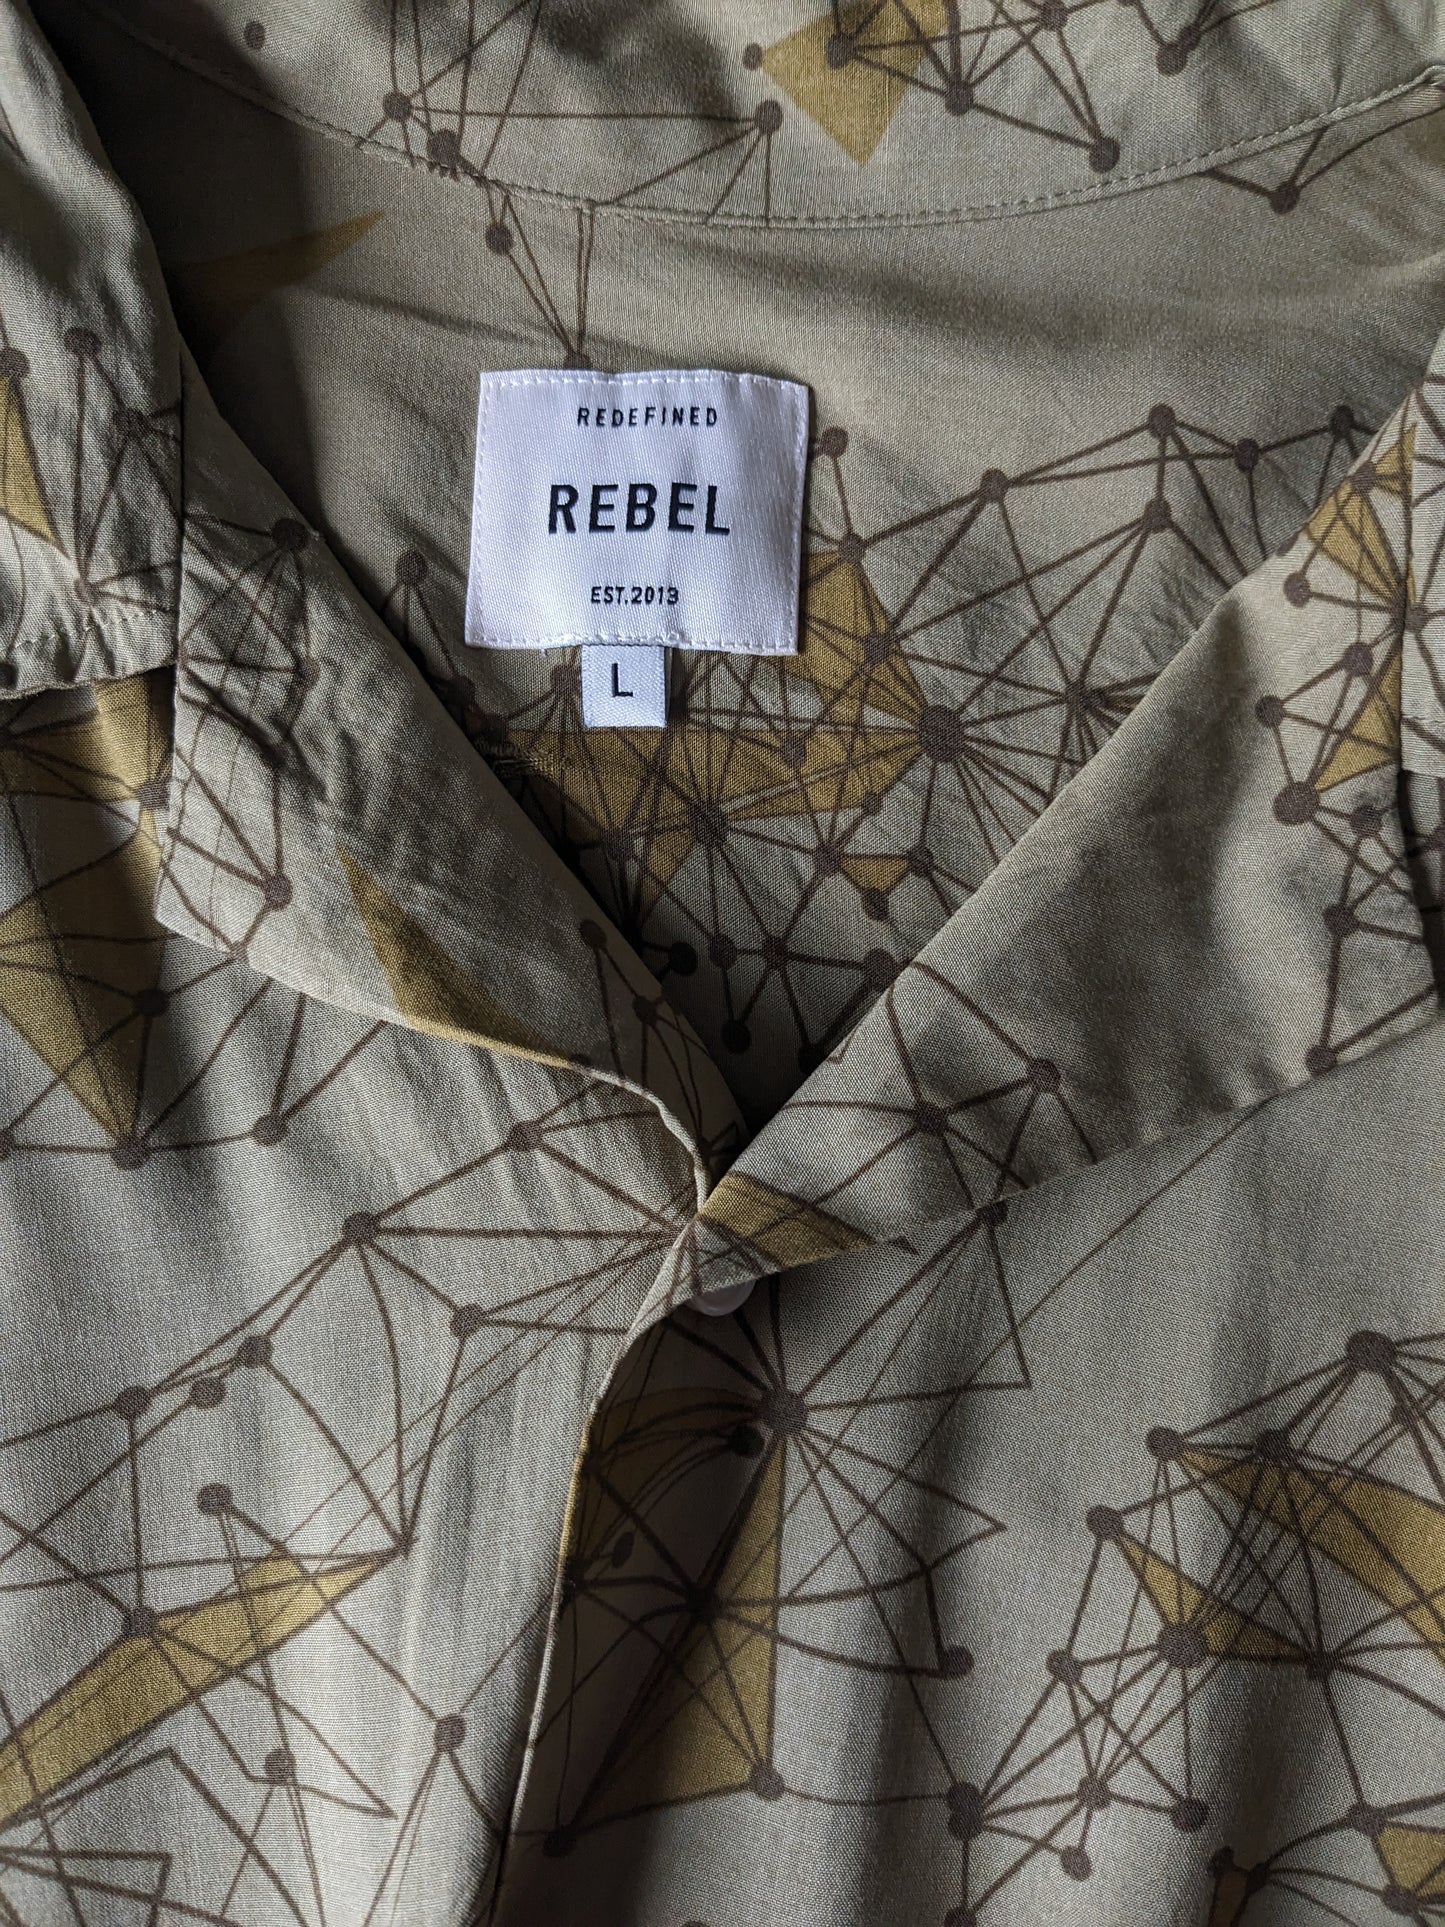 Camisa de estampado rebelde manga corta. Impresión verde. Tamaño L / XL.